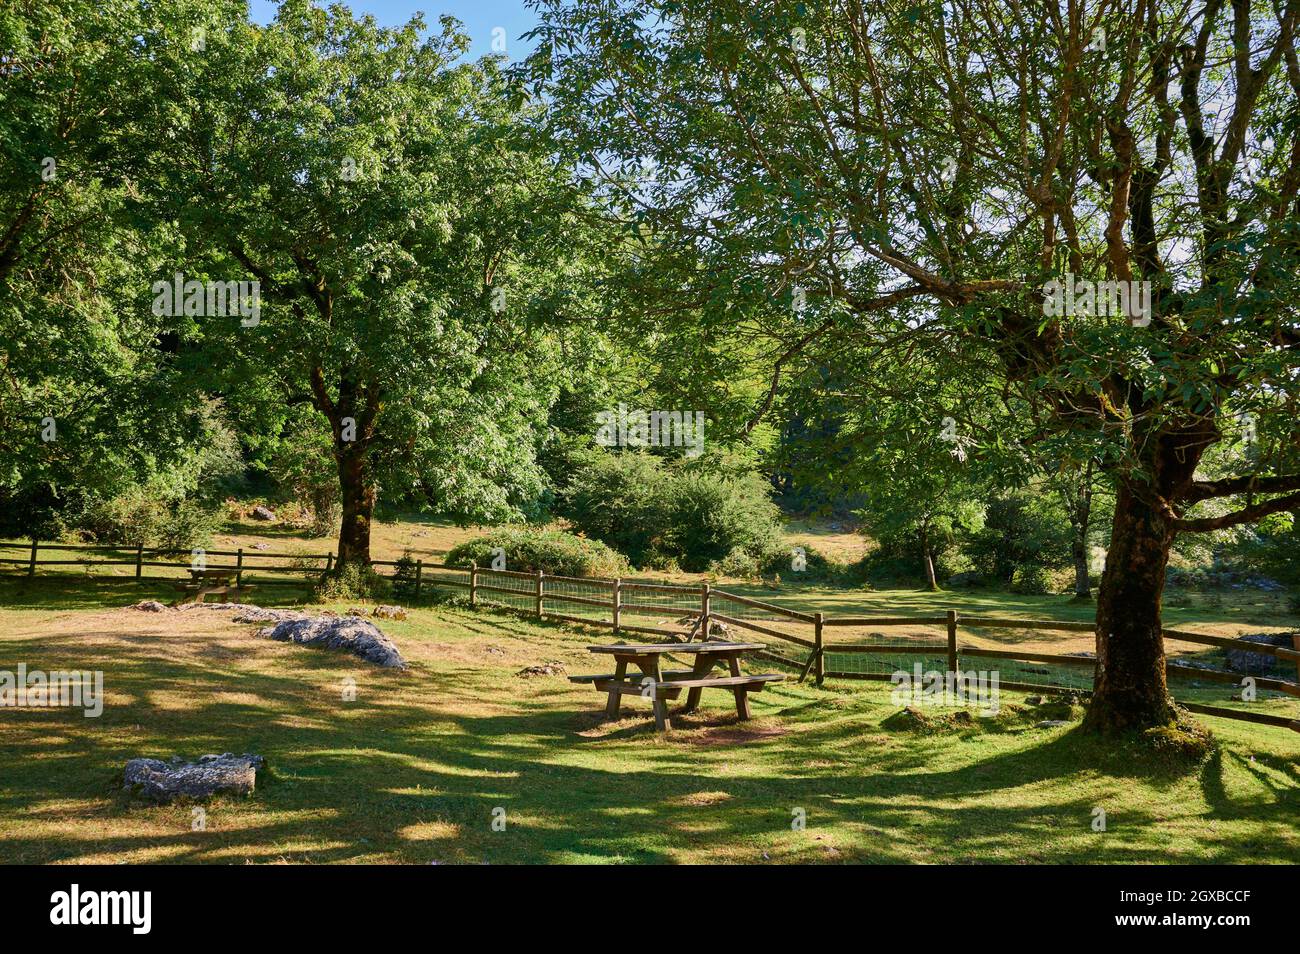 Rastplatz mit hölzernen Picknickbänken zwischen Bäumen, Sierra de Urbasa, Navarra, Spanien, Europa. Stockfoto